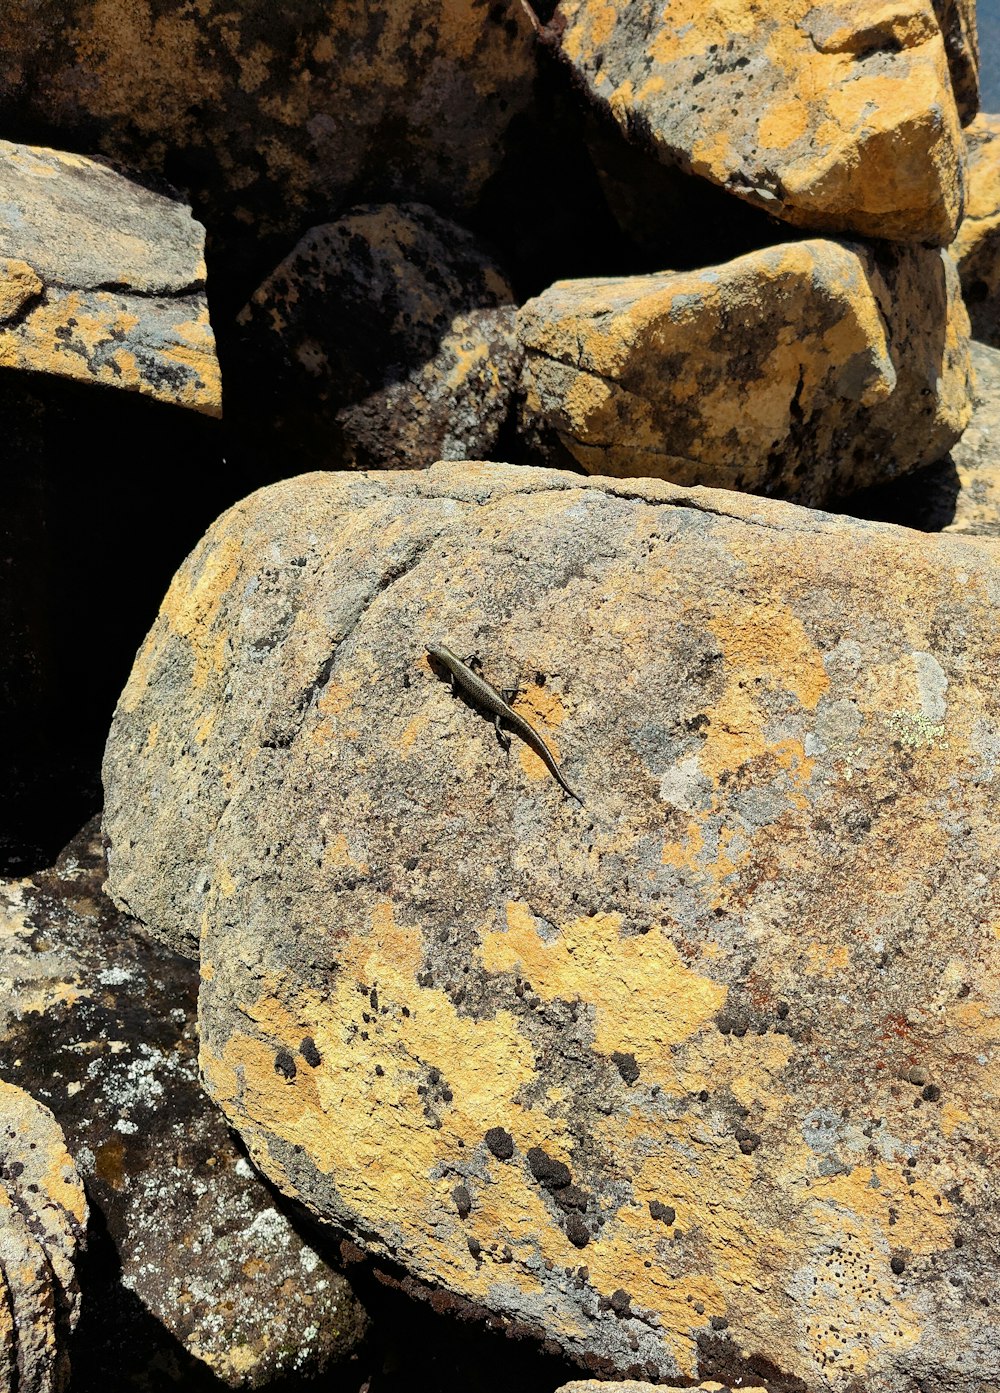 Eine Eidechse sitzt auf einem mit Flechten bewachsenen Felsen